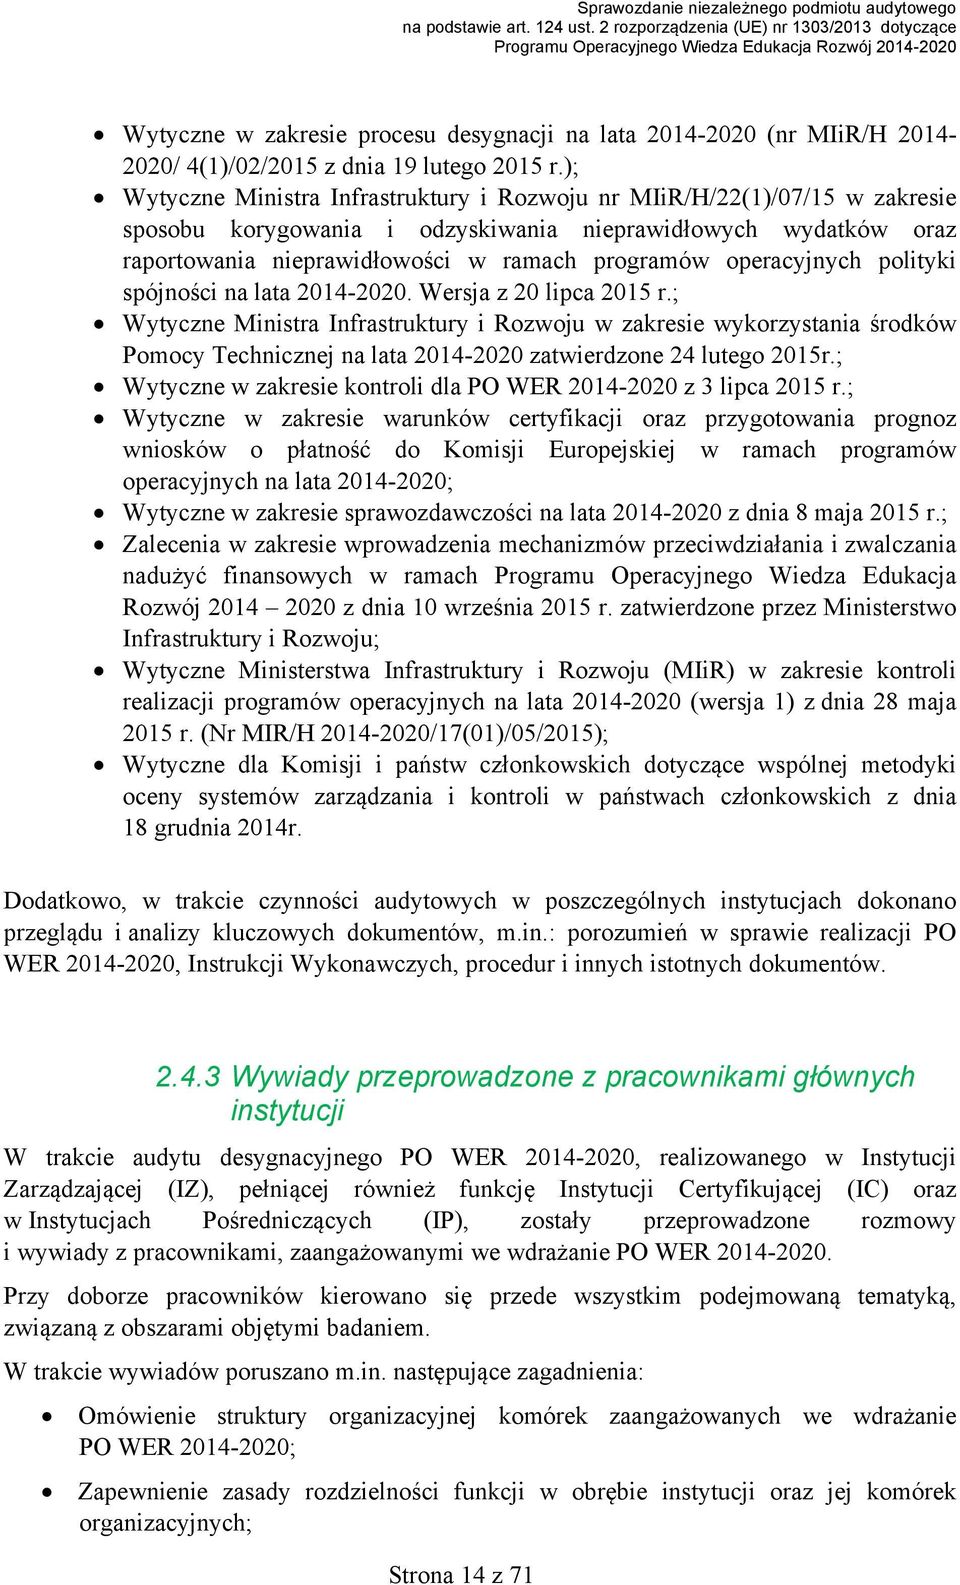 operacyjnych polityki spójności na lata 20142020. Wersja z 20 lipca 2015 r.